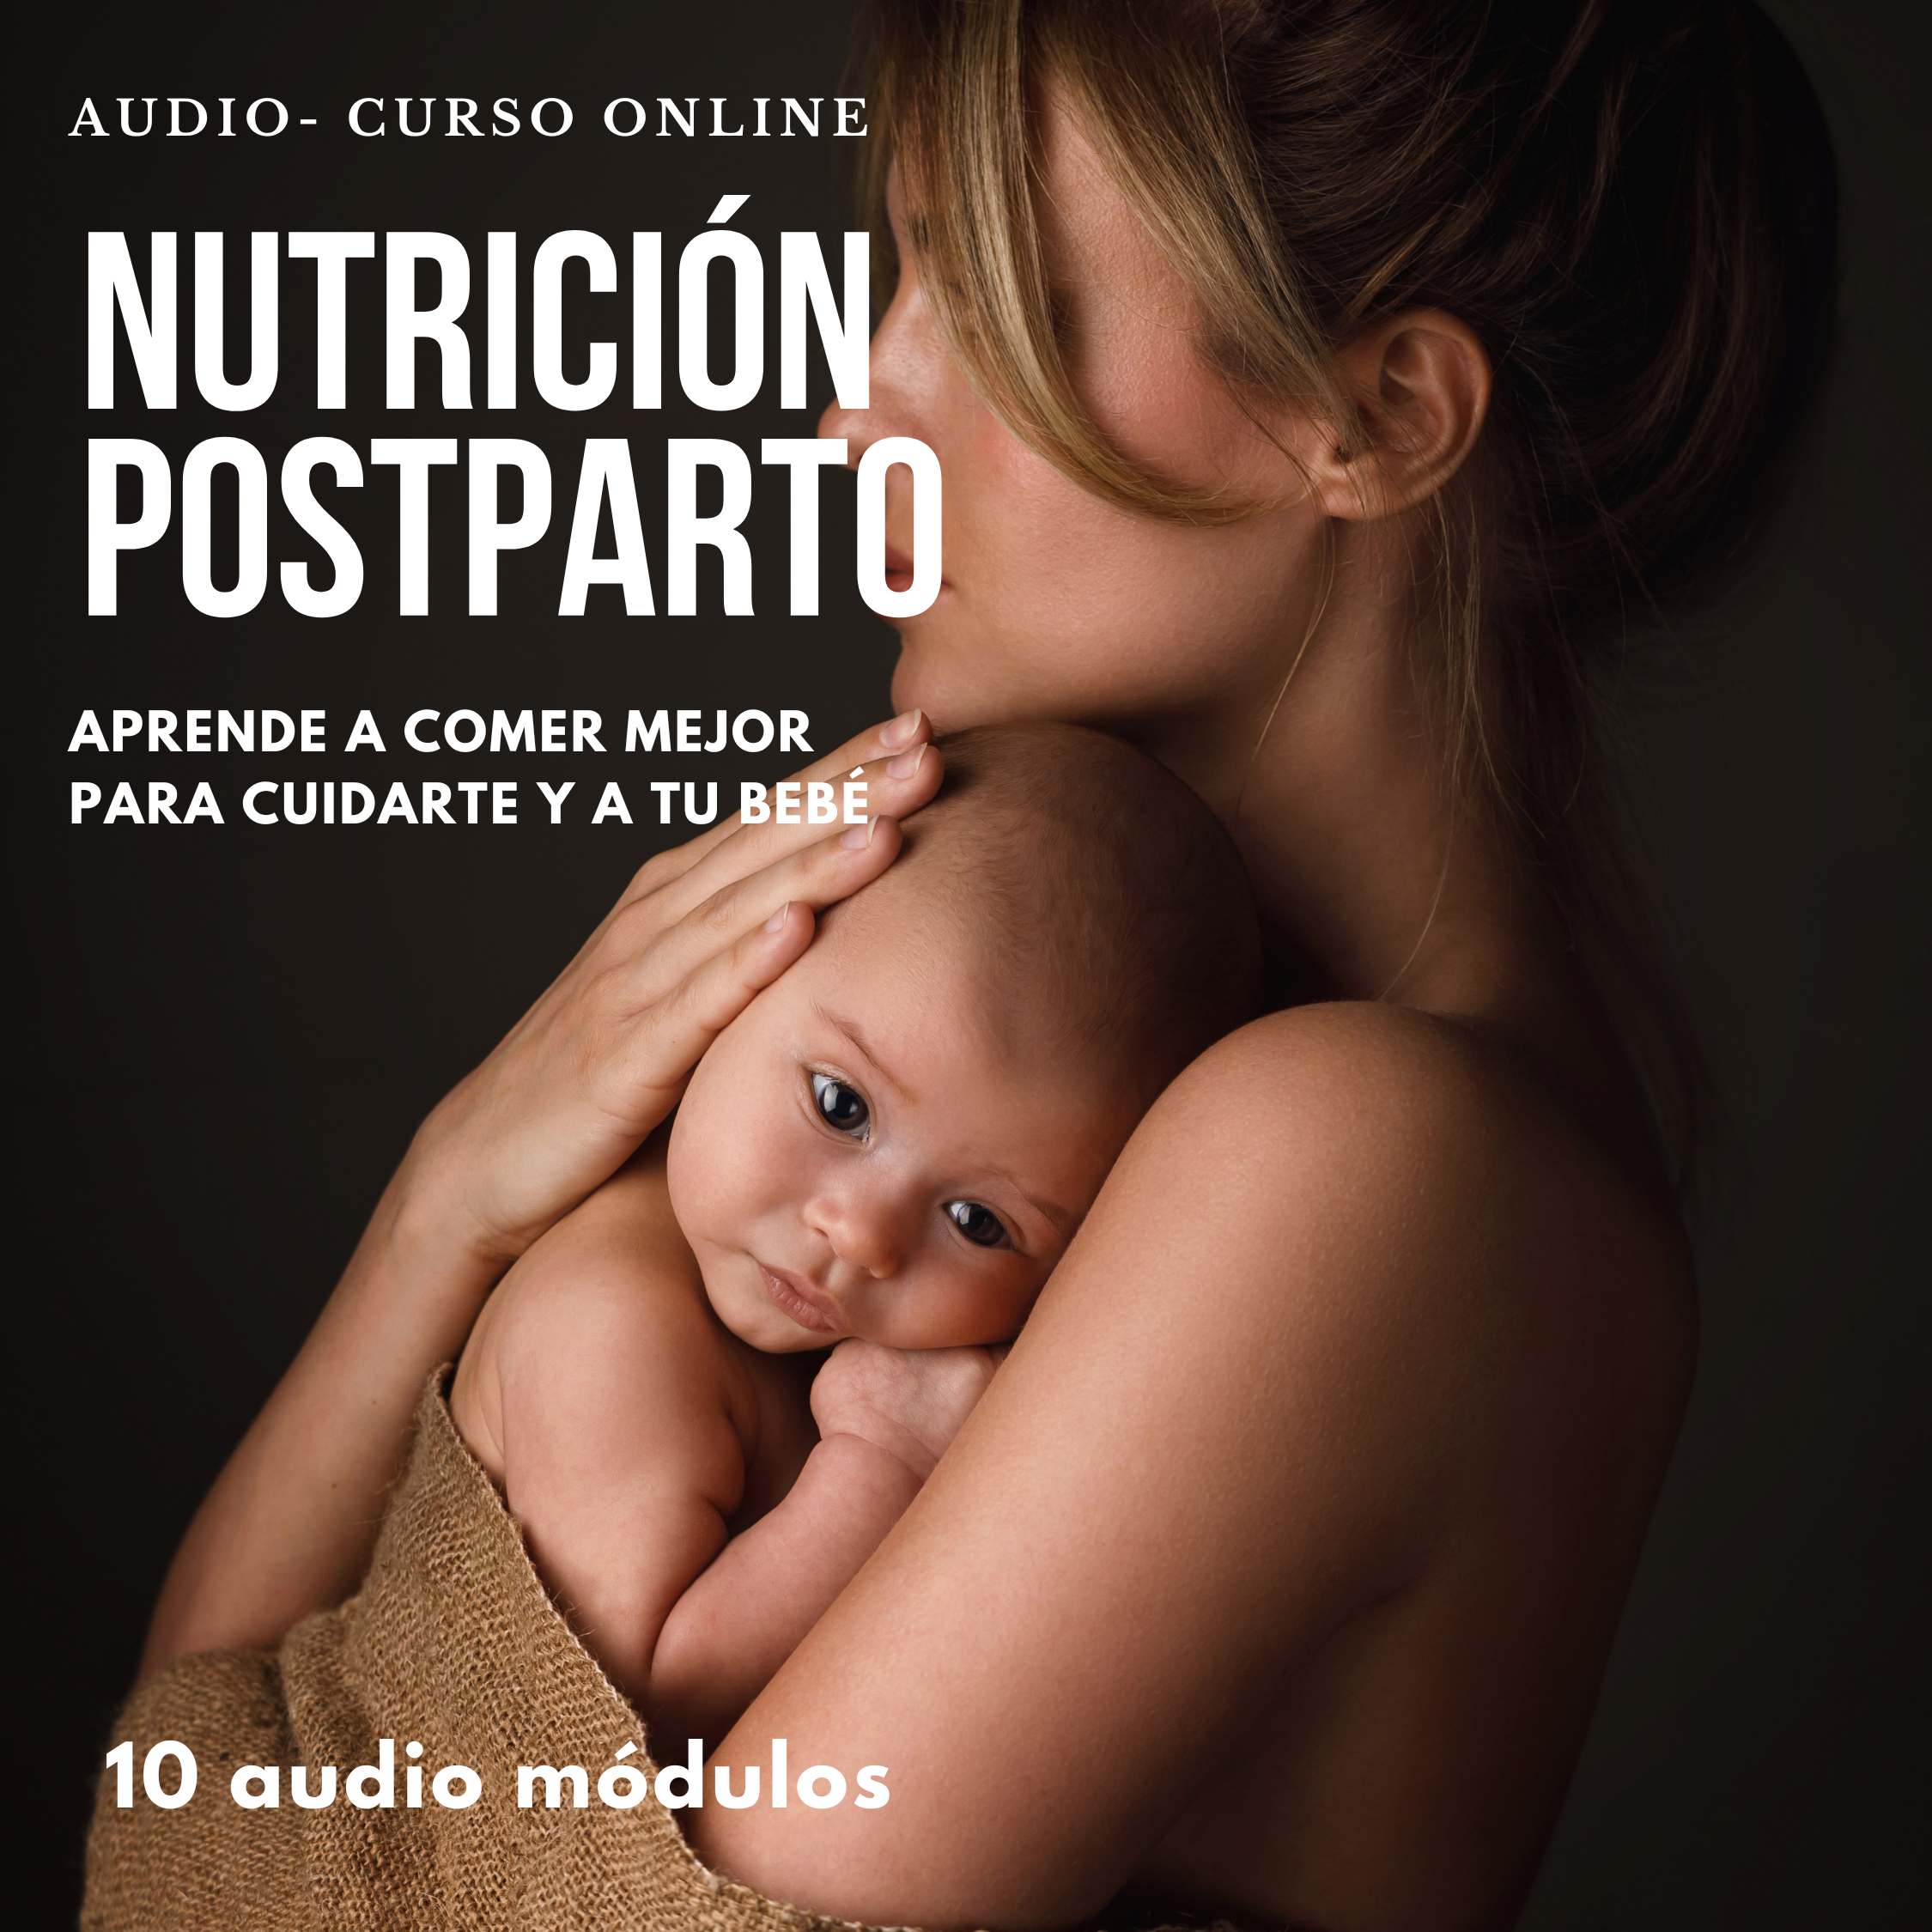 AudioCurso - Nutrición Postparto